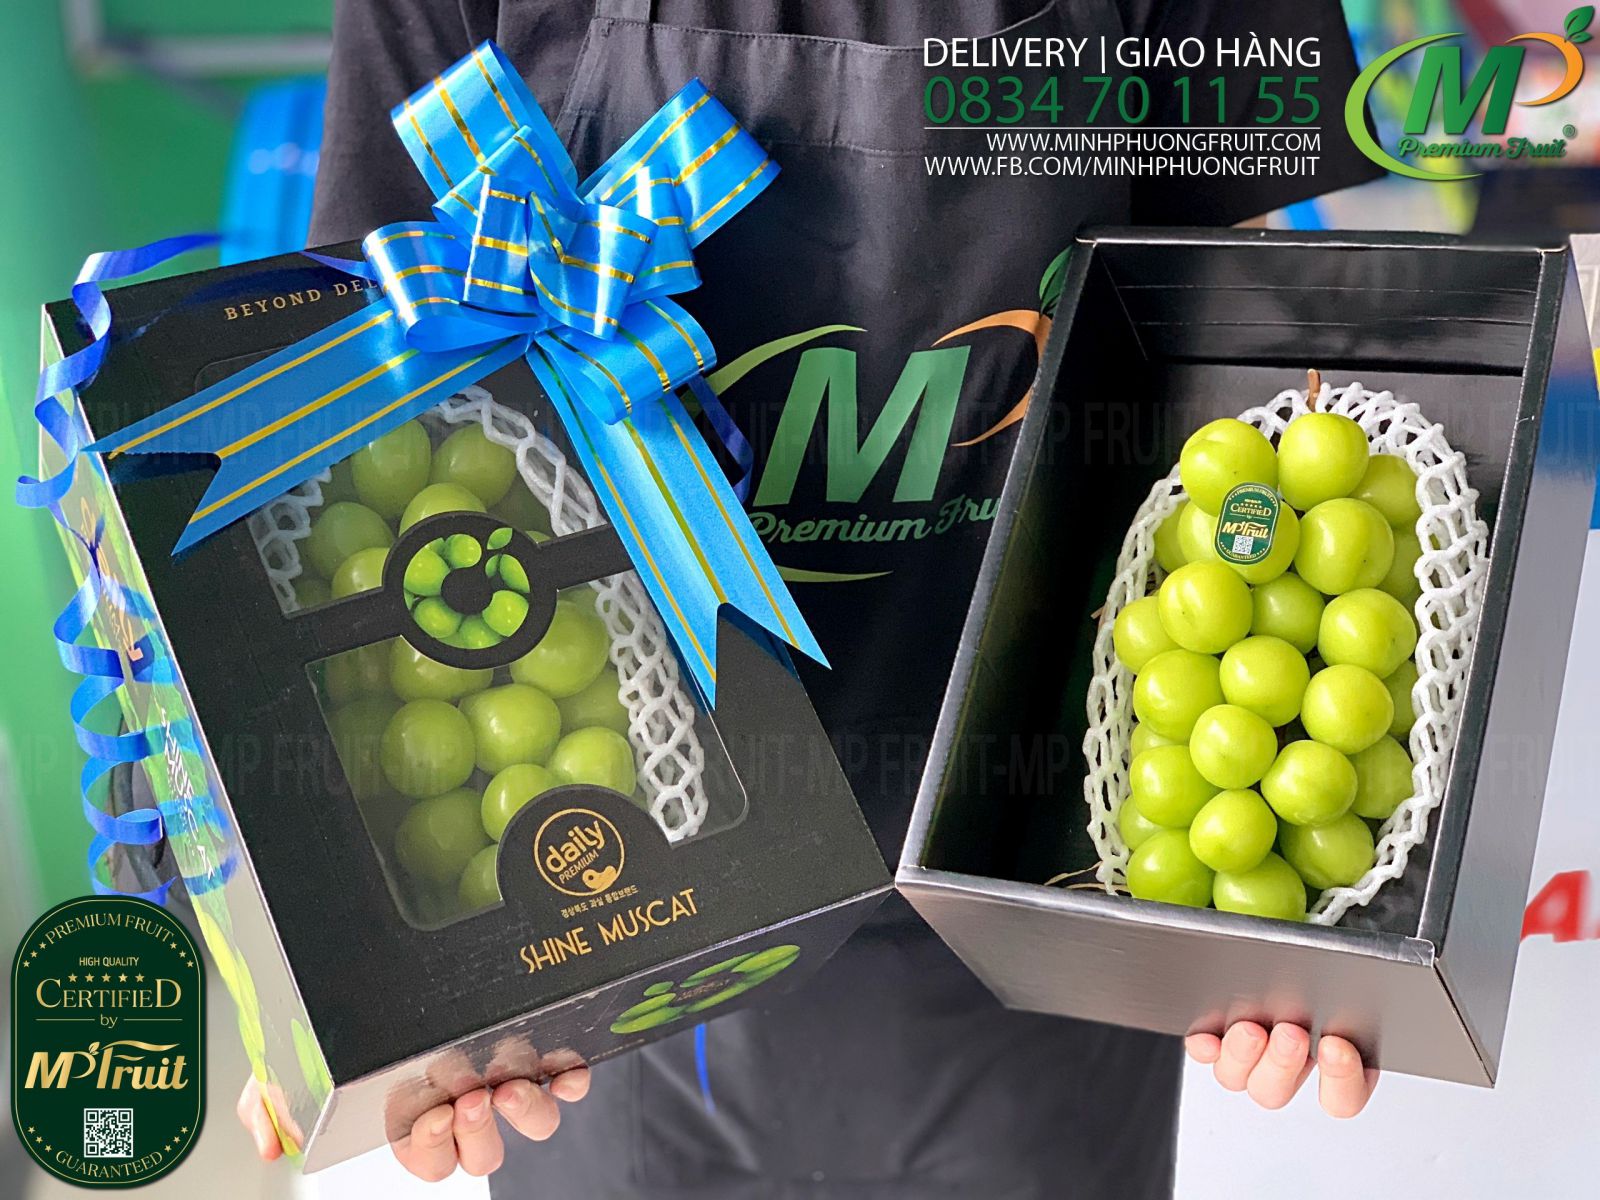 Nho Mẫu Đơn Shine Muscat Premium Hàn Quốc Hộp Chùm 1kg tại MP Fruits